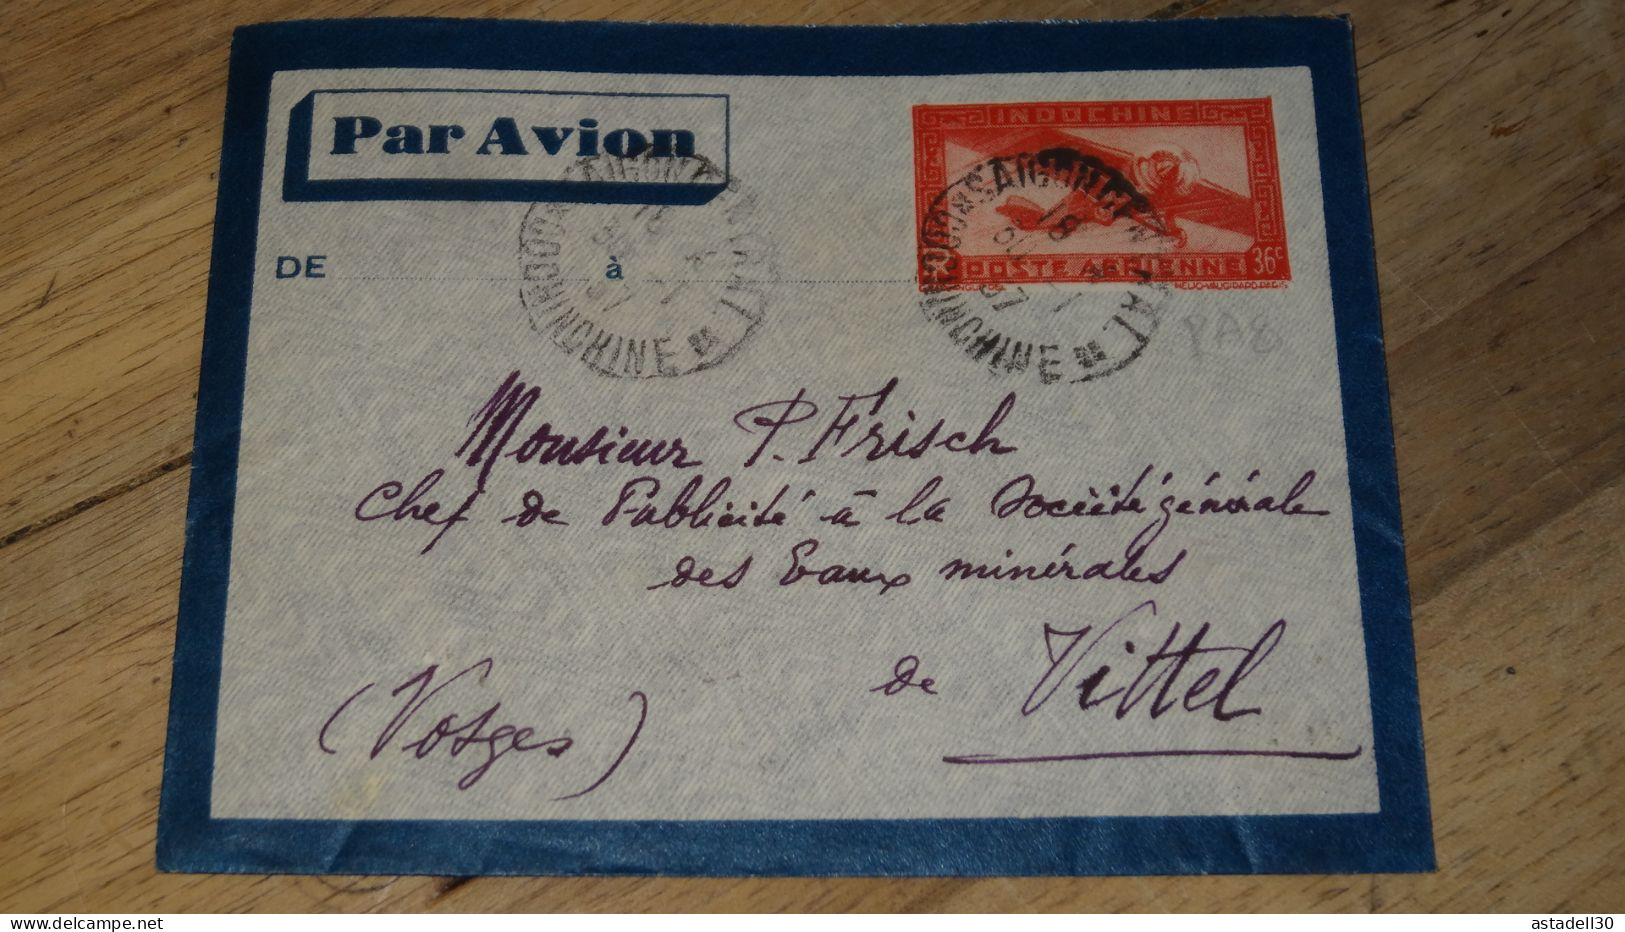 Enveloppe Entier Postal INDOCHINE, Par Avion, Saigon 1937 ......... ..... 240424 ....... CL6-3a - Covers & Documents